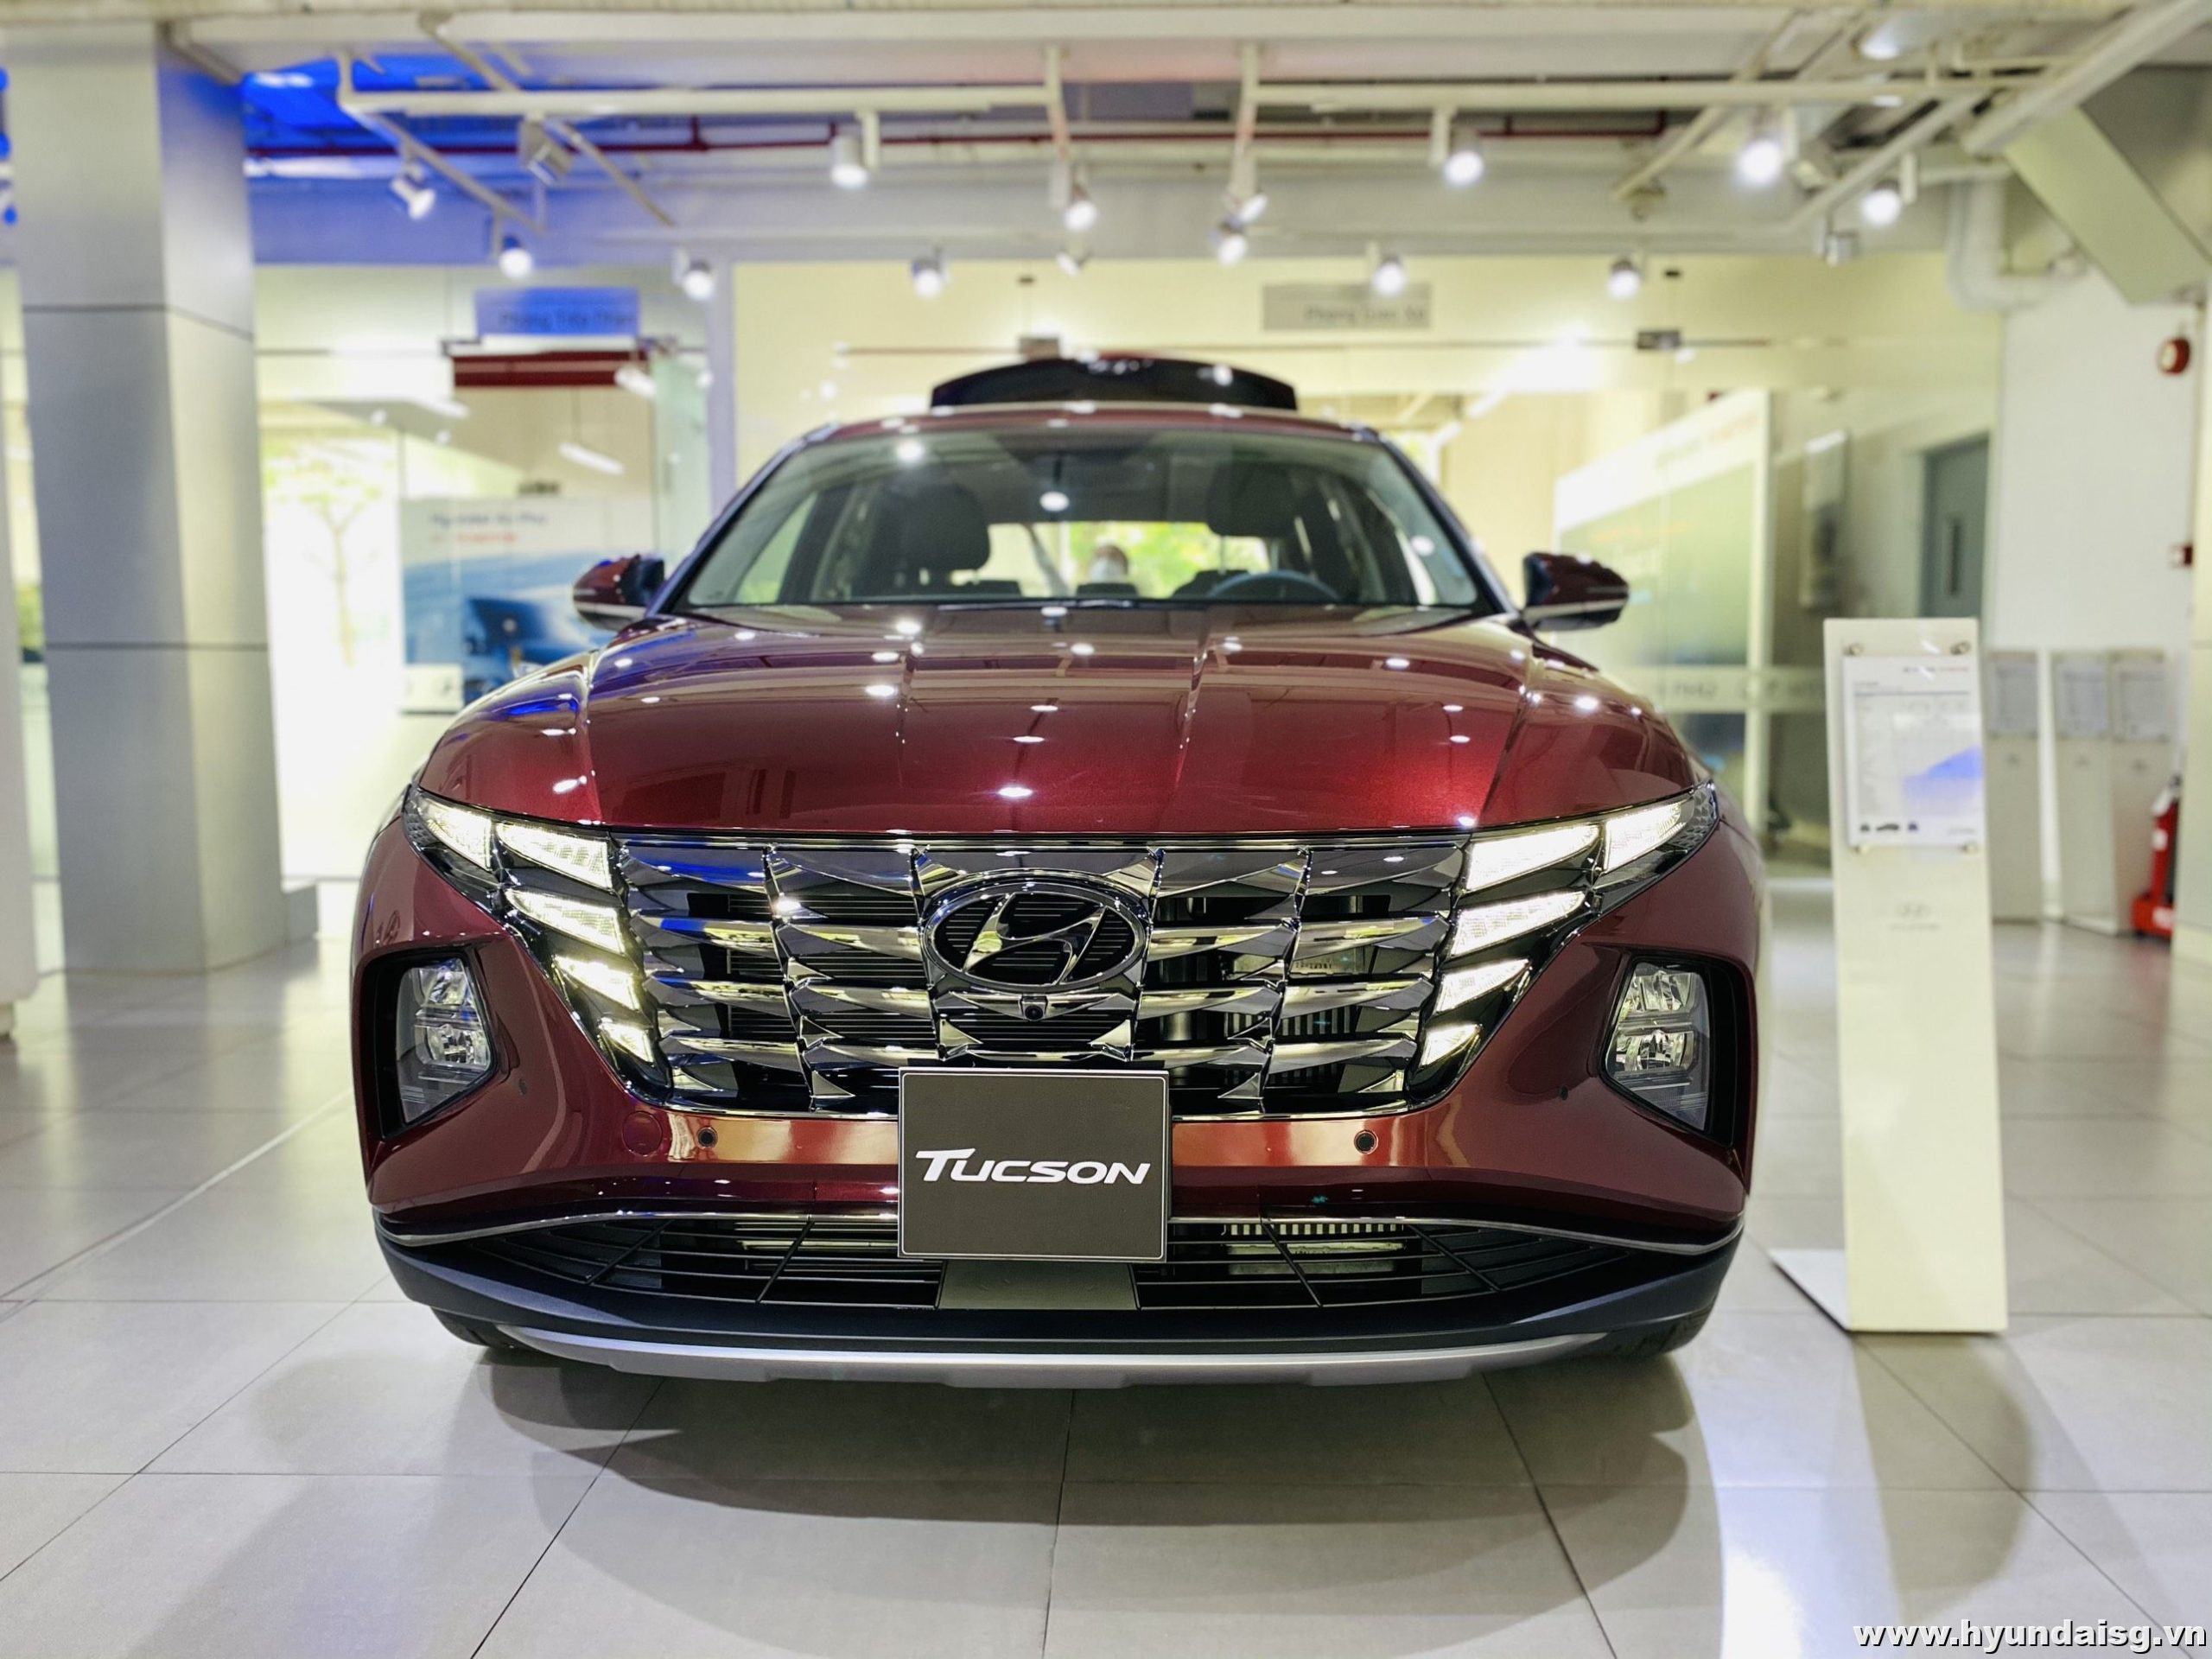 Bảng giá và chương trình khuyến mãi xe Hyundai tháng 9/2022